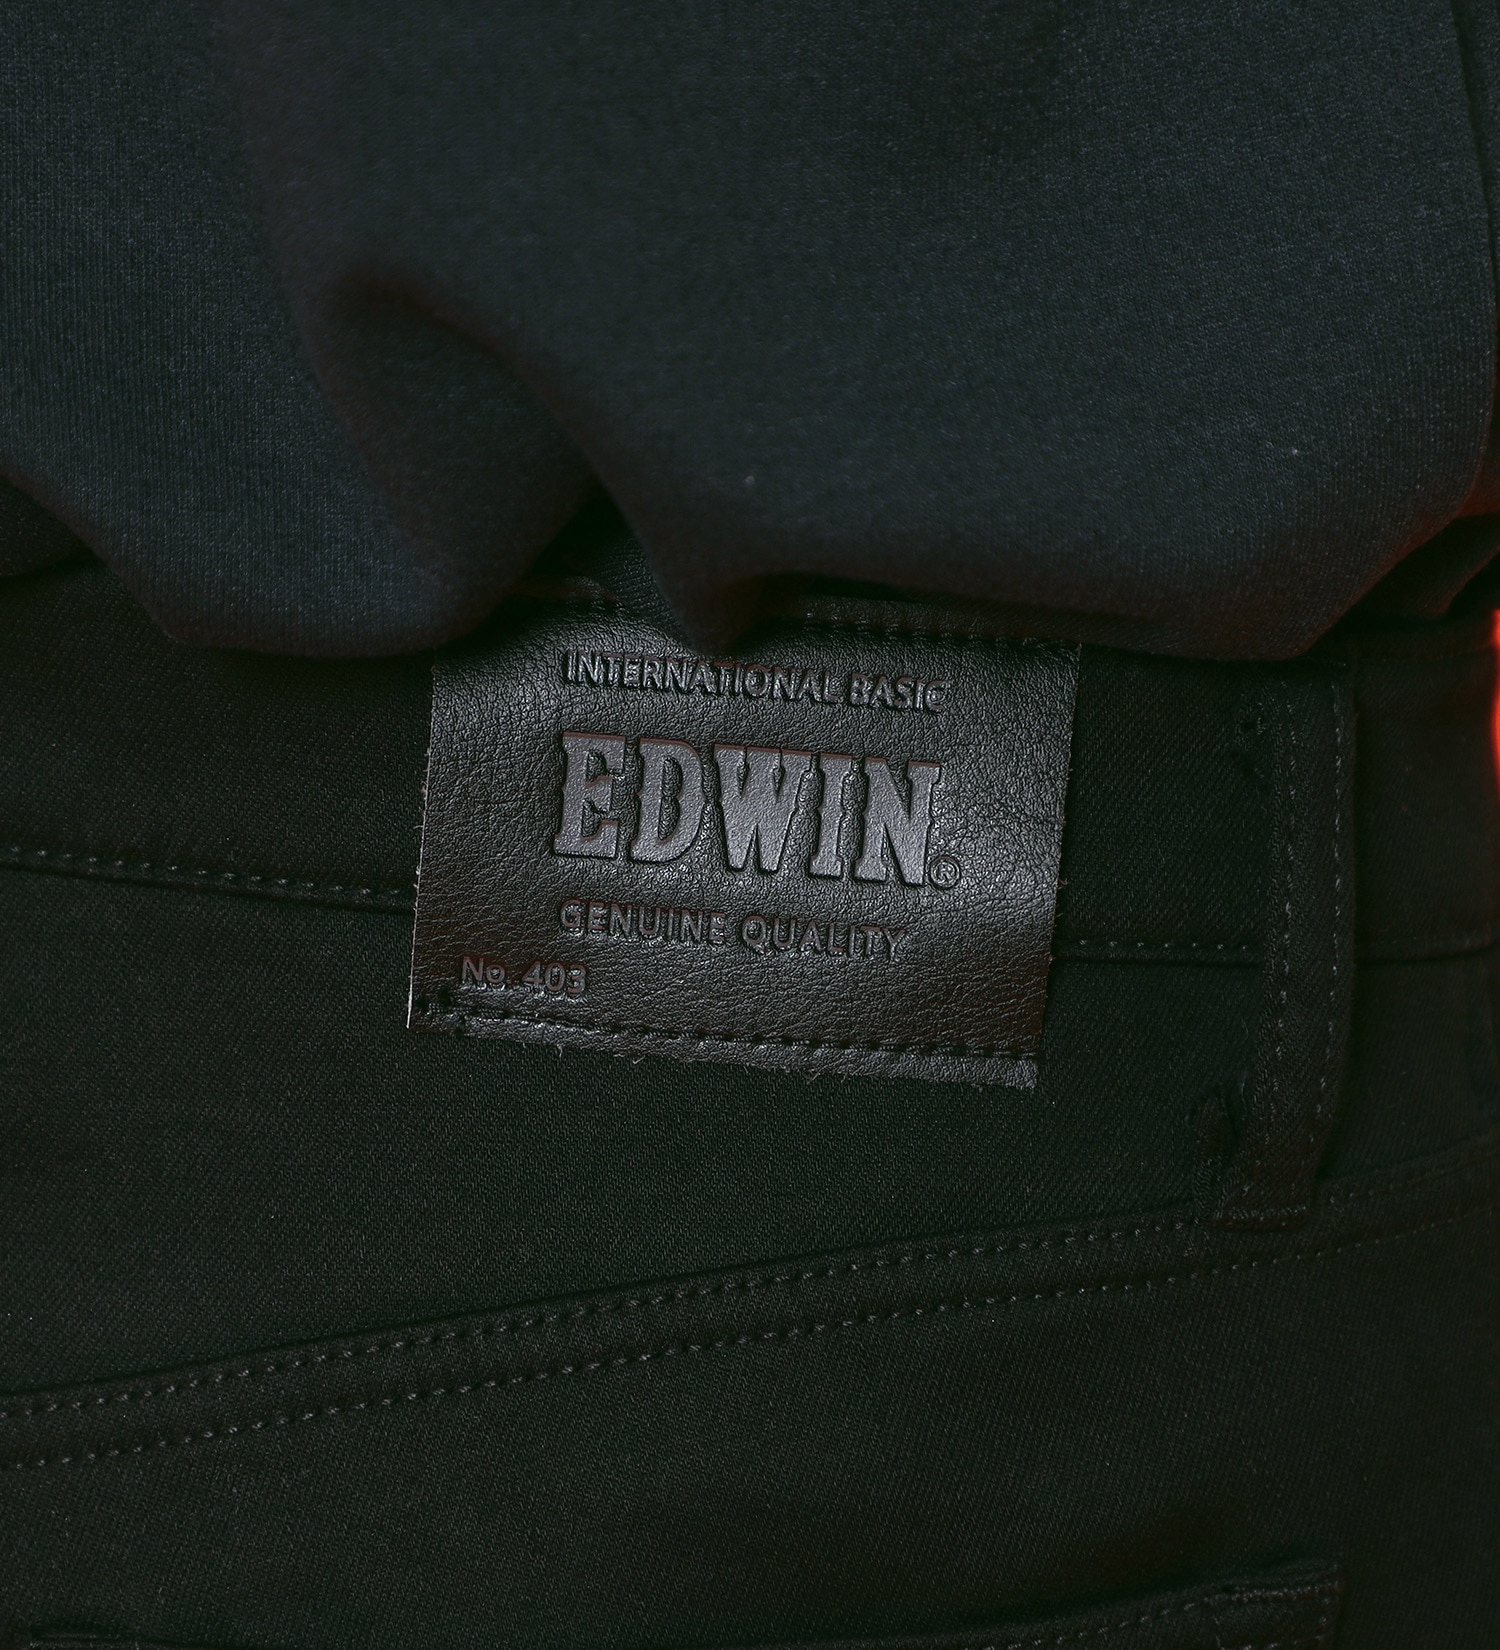 EDWIN(エドウイン)の【BLACKFRIDAY】2層で暖かい EDWIN インターナショナルベーシック レギュラーストレートパンツ403 WILD FIRE 2層ボンディング構造 【暖】|パンツ/パンツ/メンズ|ブラック